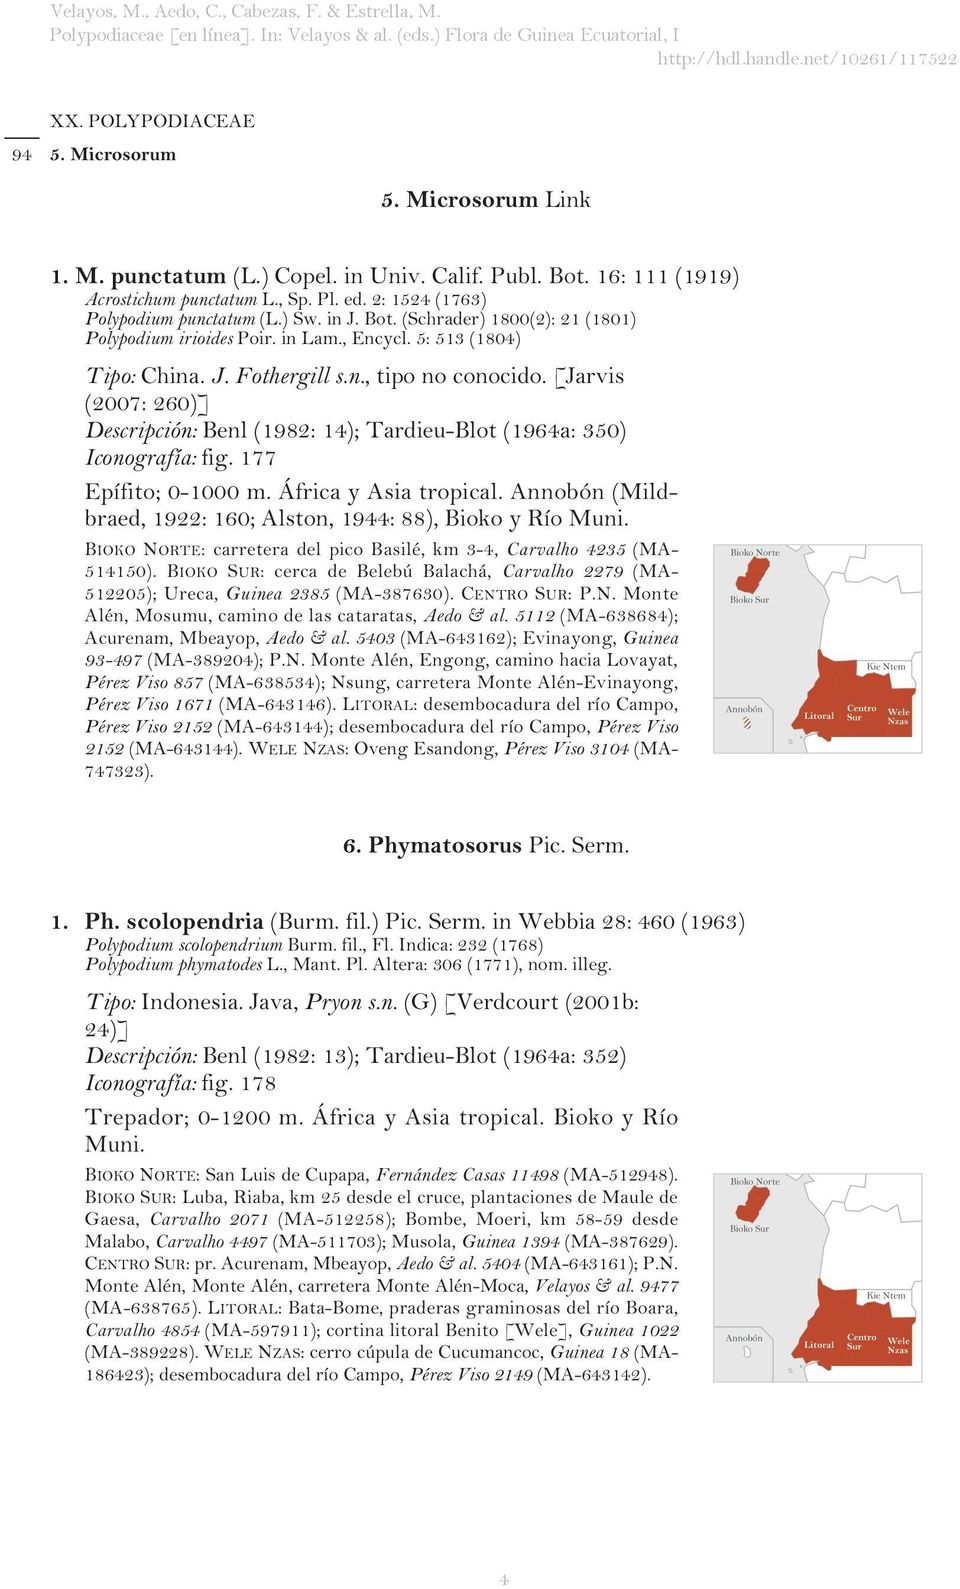 [Jarvis (2007: 260)] Descripción: Benl (1982: 14); Tardieu-Blot (1964a: 350) Iconografía: fig. 177 Epífito; 0-1000 m. África y Asia tropical.